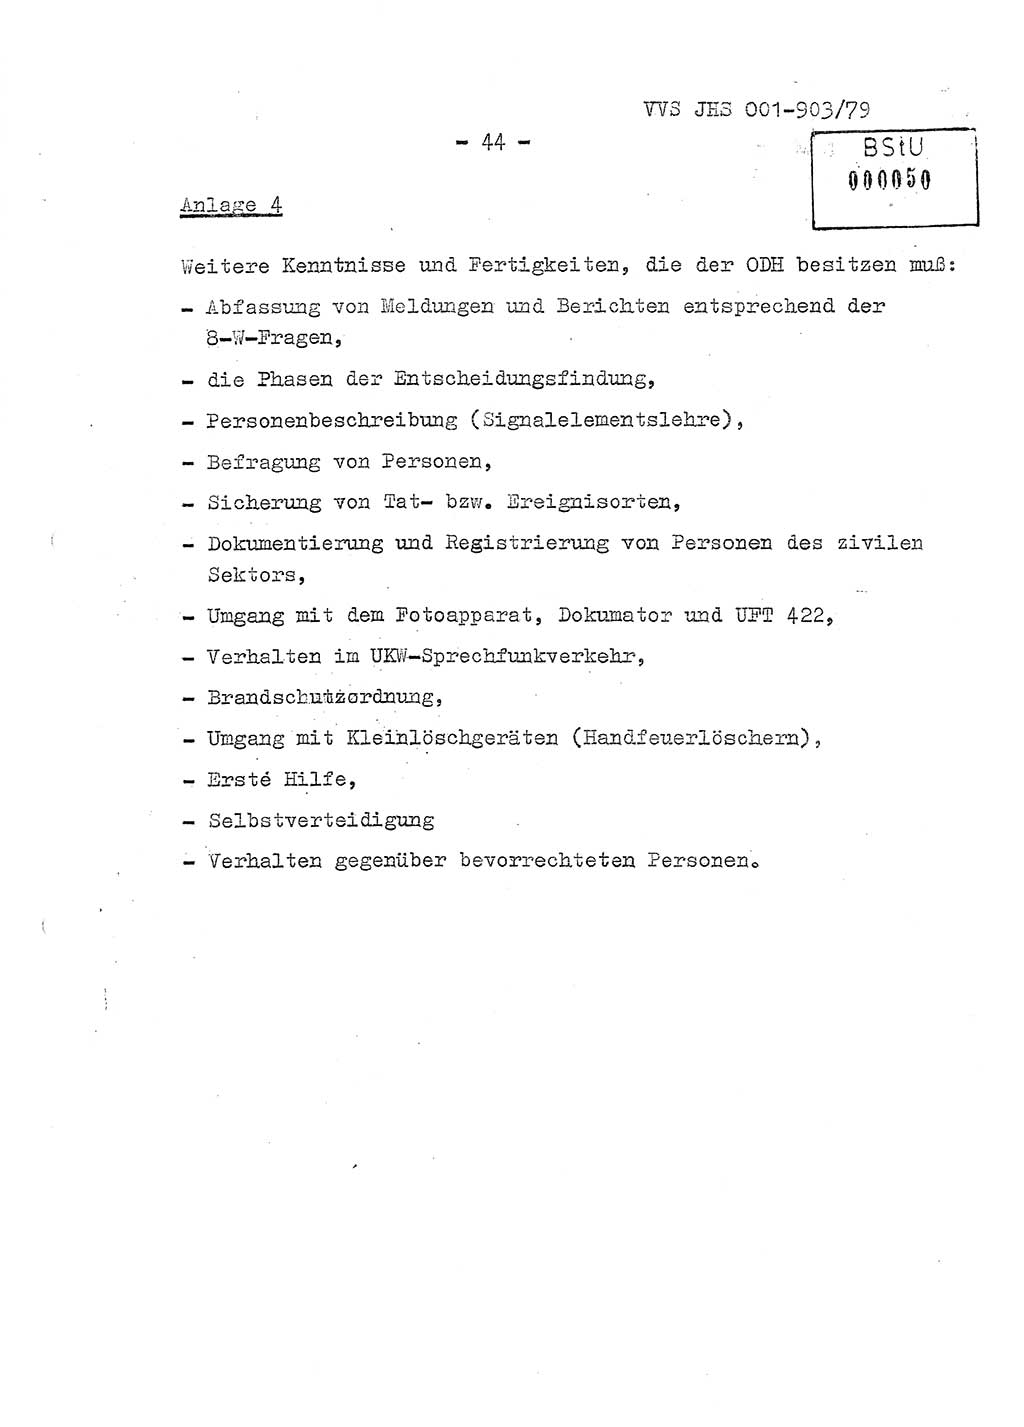 Fachschulabschlußarbeit Oberleutnant Jochen Pfeffer (HA Ⅸ/AGL), Ministerium für Staatssicherheit (MfS) [Deutsche Demokratische Republik (DDR)], Juristische Hochschule (JHS), Vertrauliche Verschlußsache (VVS) 001-903/79, Potsdam 1979, Seite 44 (FS-Abschl.-Arb. MfS DDR JHS VVS 001-903/79 1979, S. 44)